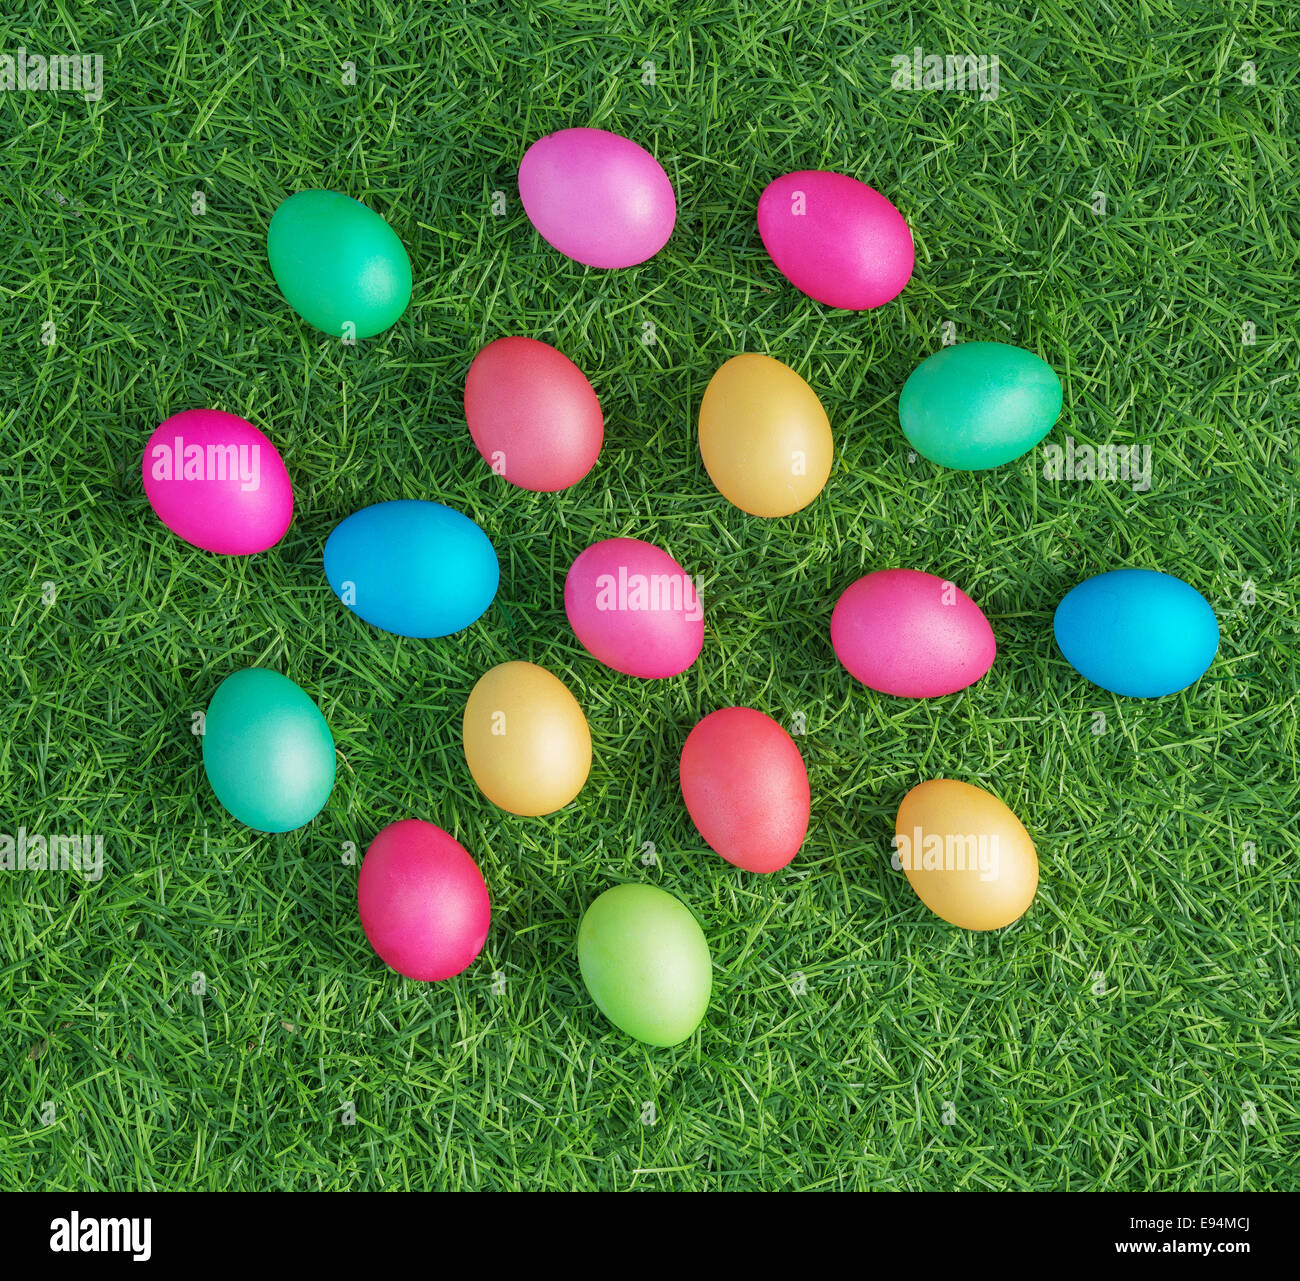 Multicolori uova di pasqua sull'erba verde Foto Stock